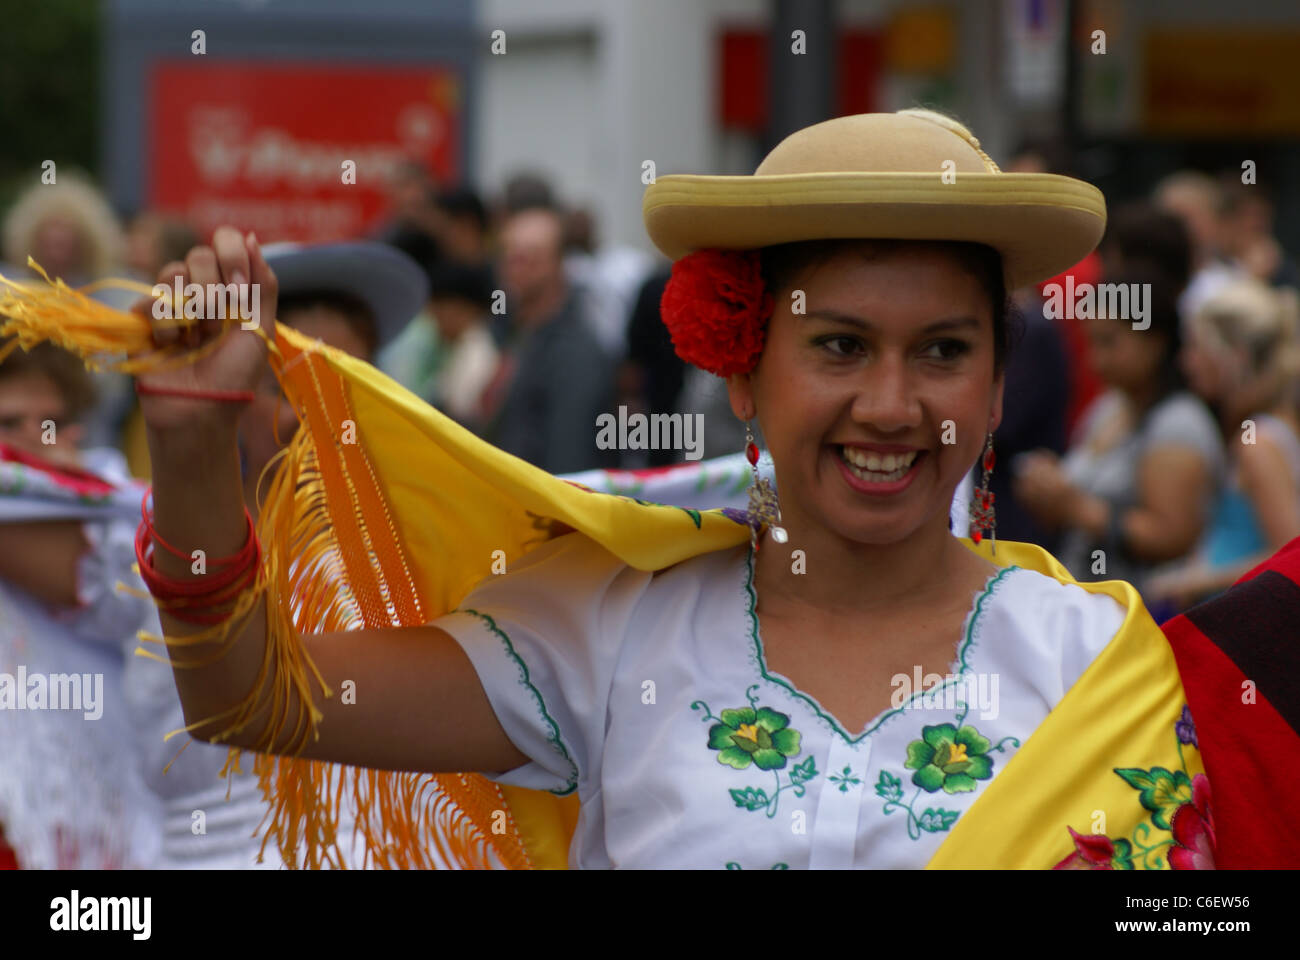 Gli interpreti di Carnevale del Pueblo, in Europa la più grande celebrazione della cultura latino-americana. Foto Stock